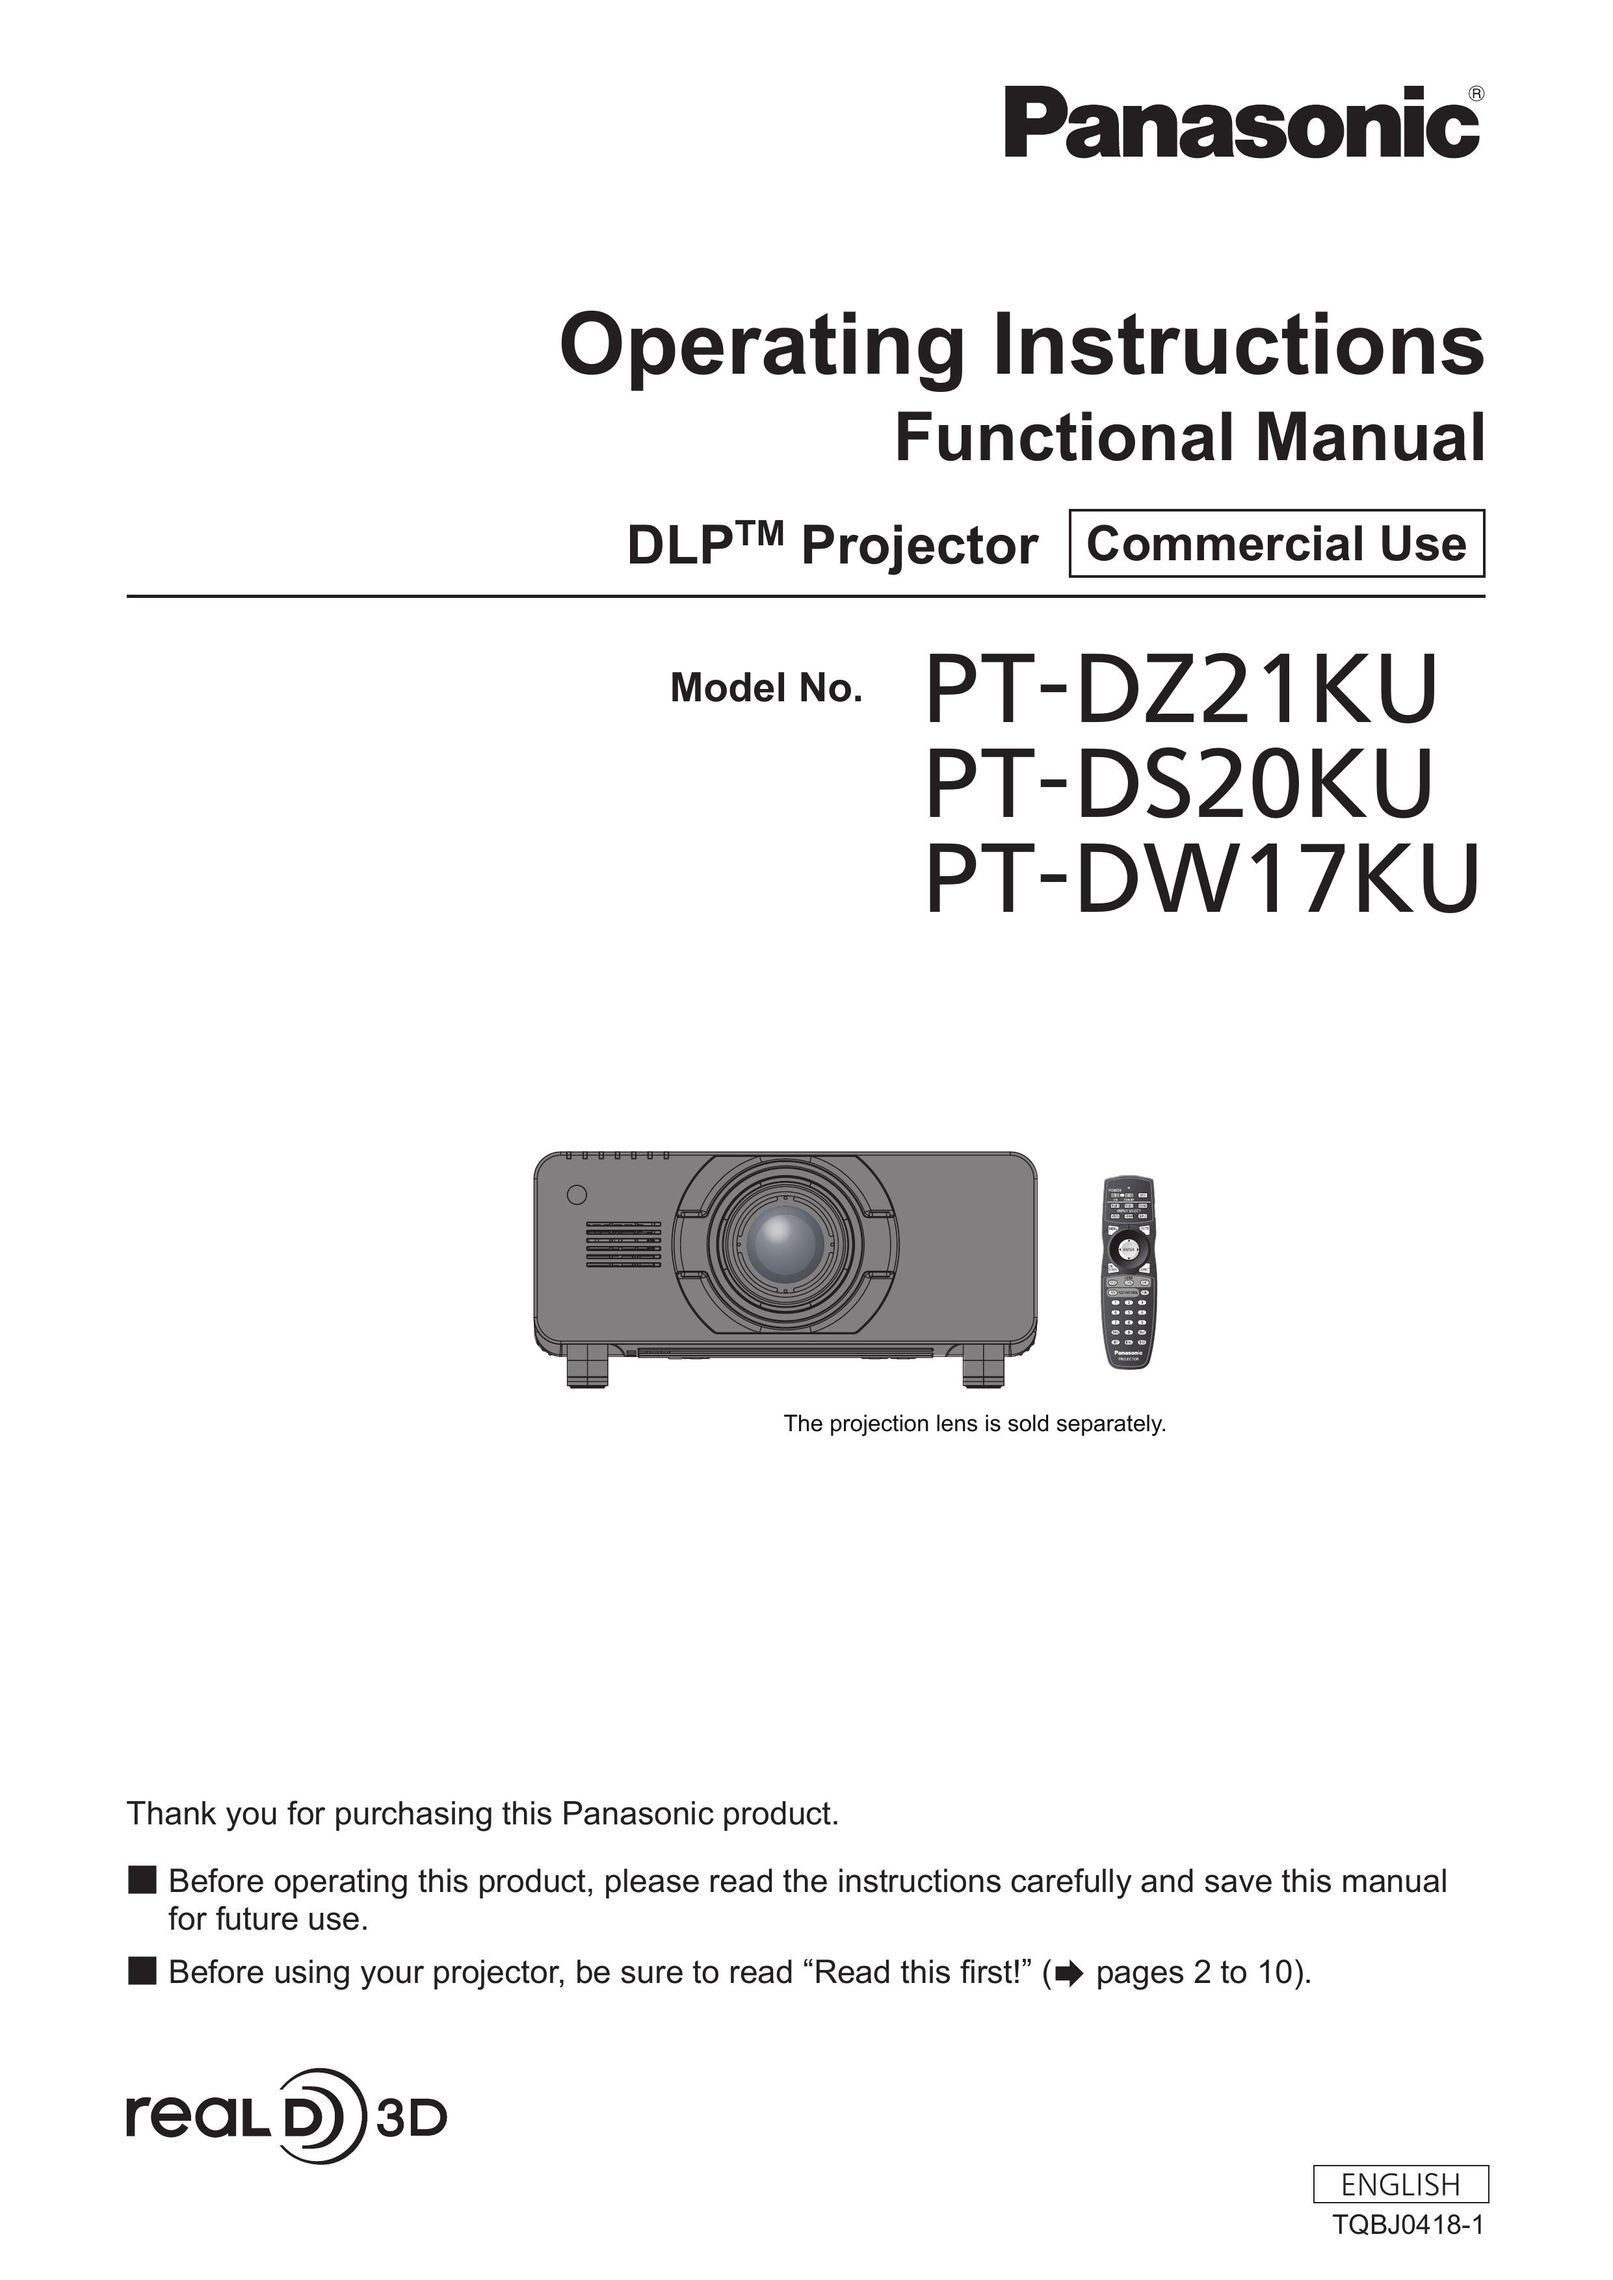 Panasonic PT-DS20KU Home Theater System User Manual